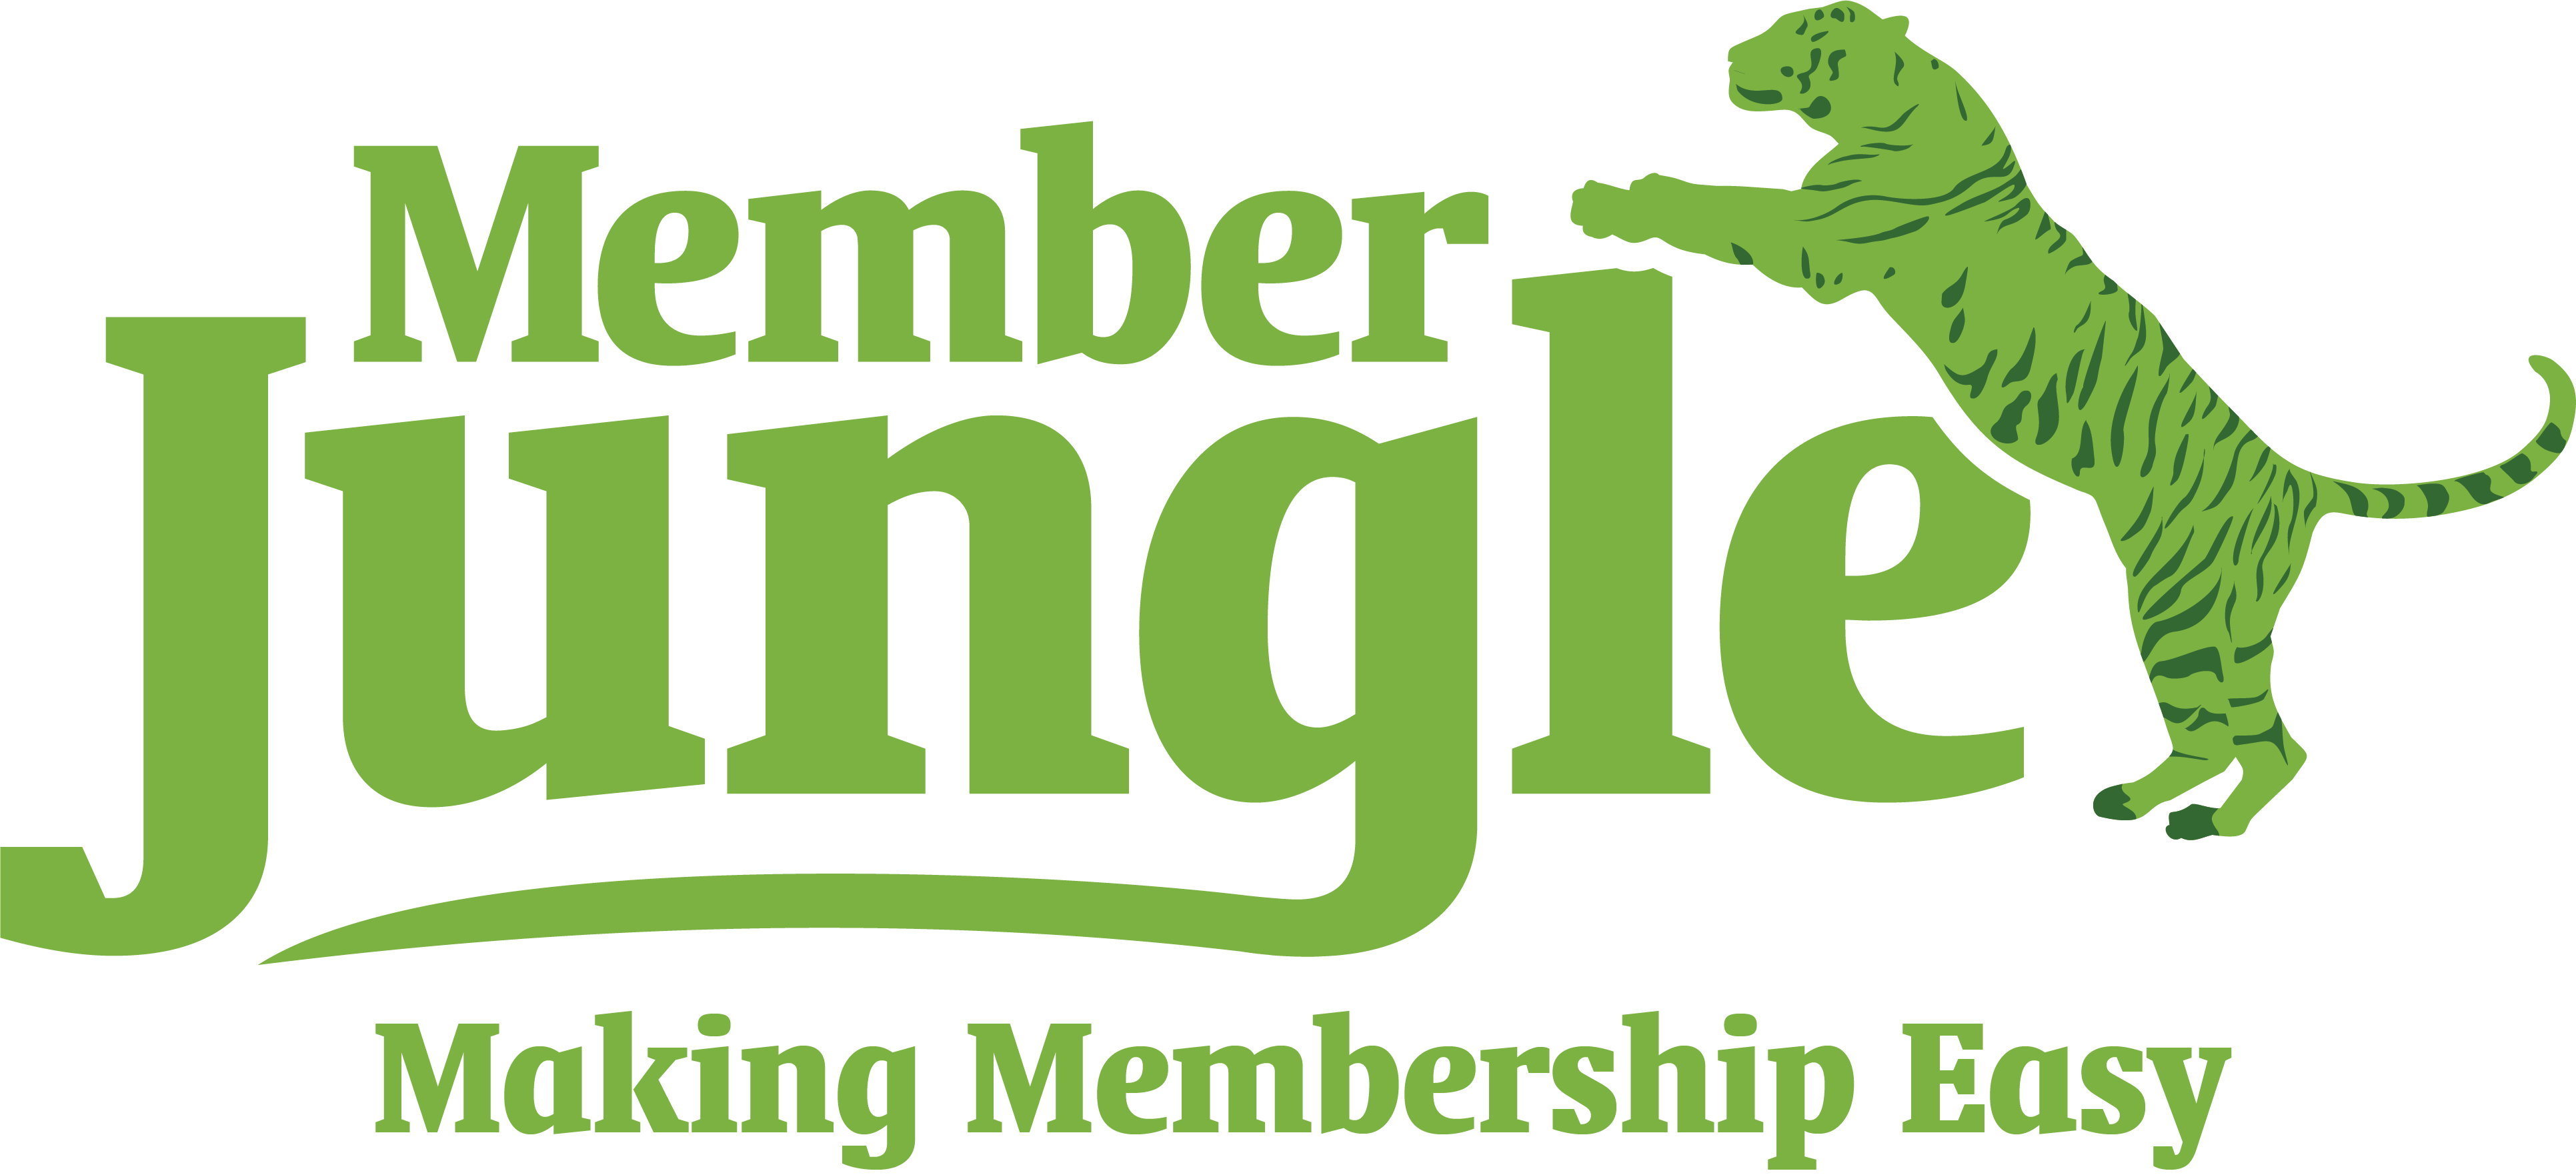 Member Jungle Making Membership Easy